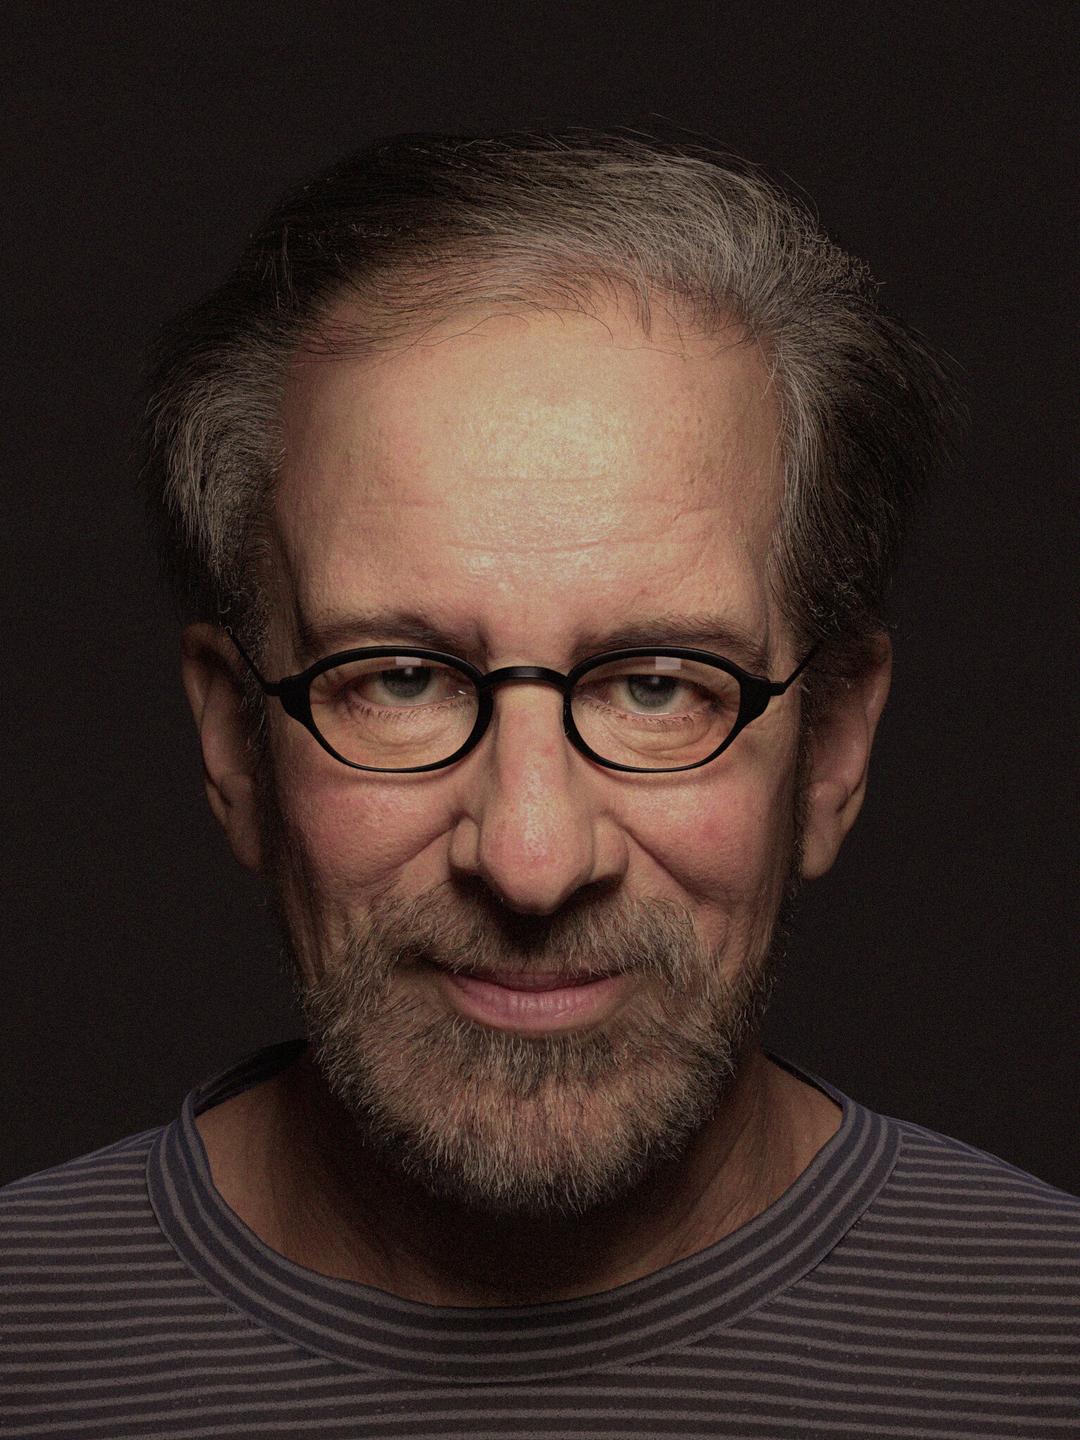 Steven Spielberg social media